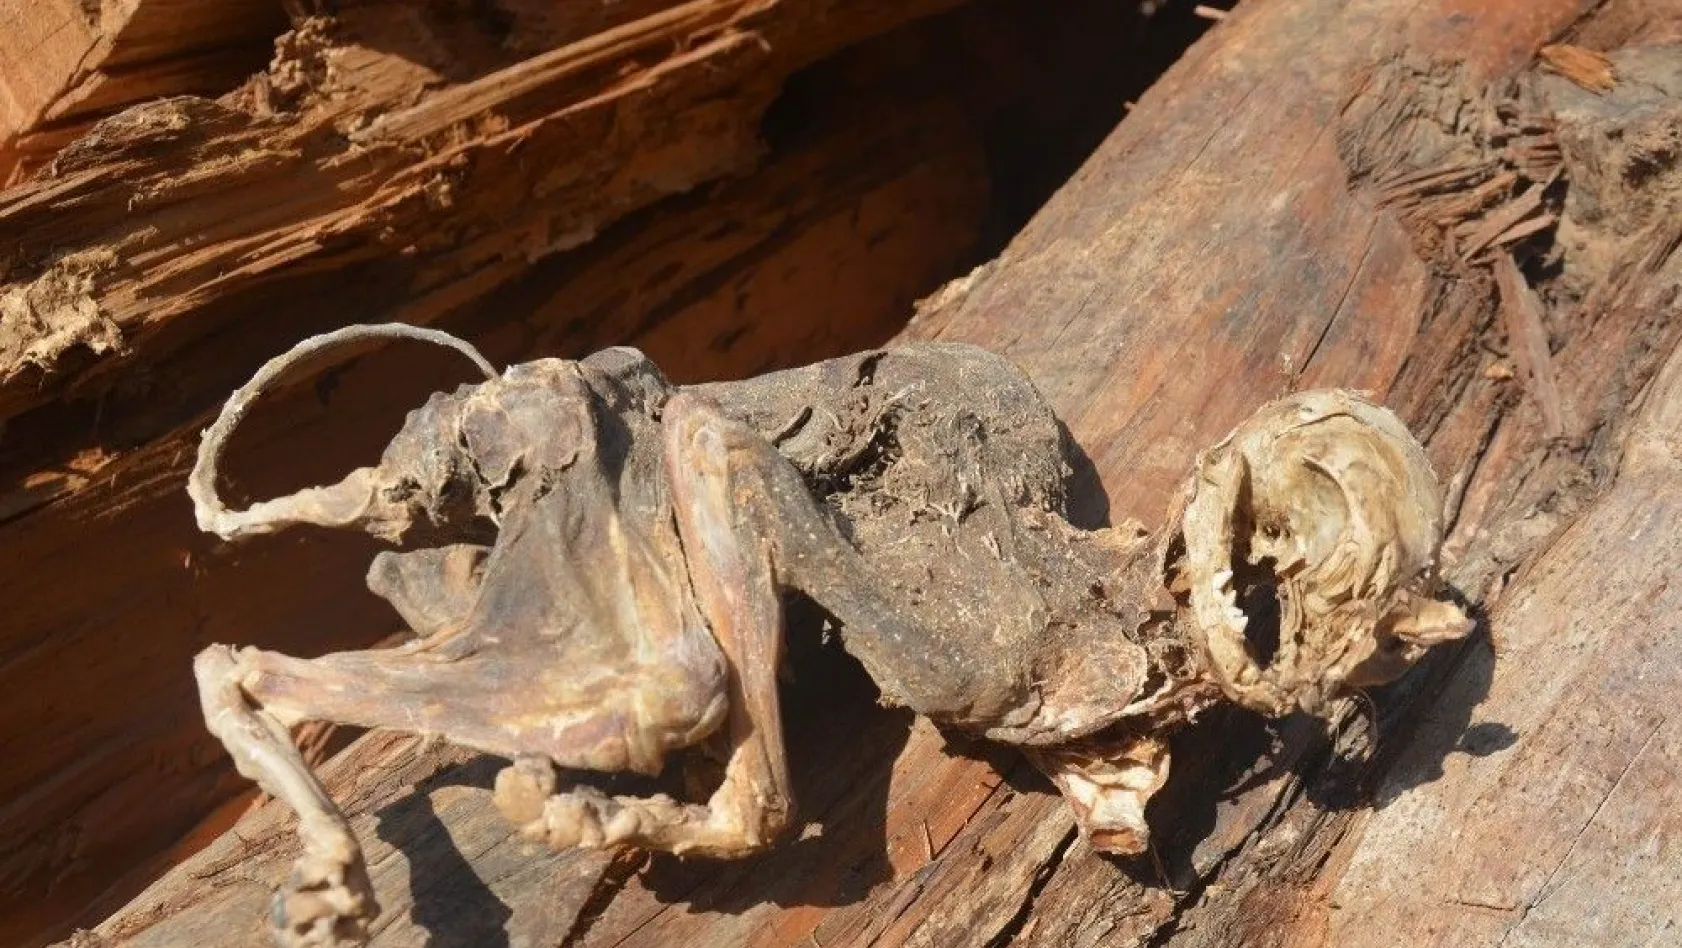 (düzeltme) 500 yıllık ağacın içinden çıkan hayvan iskeleti şaşırttı
